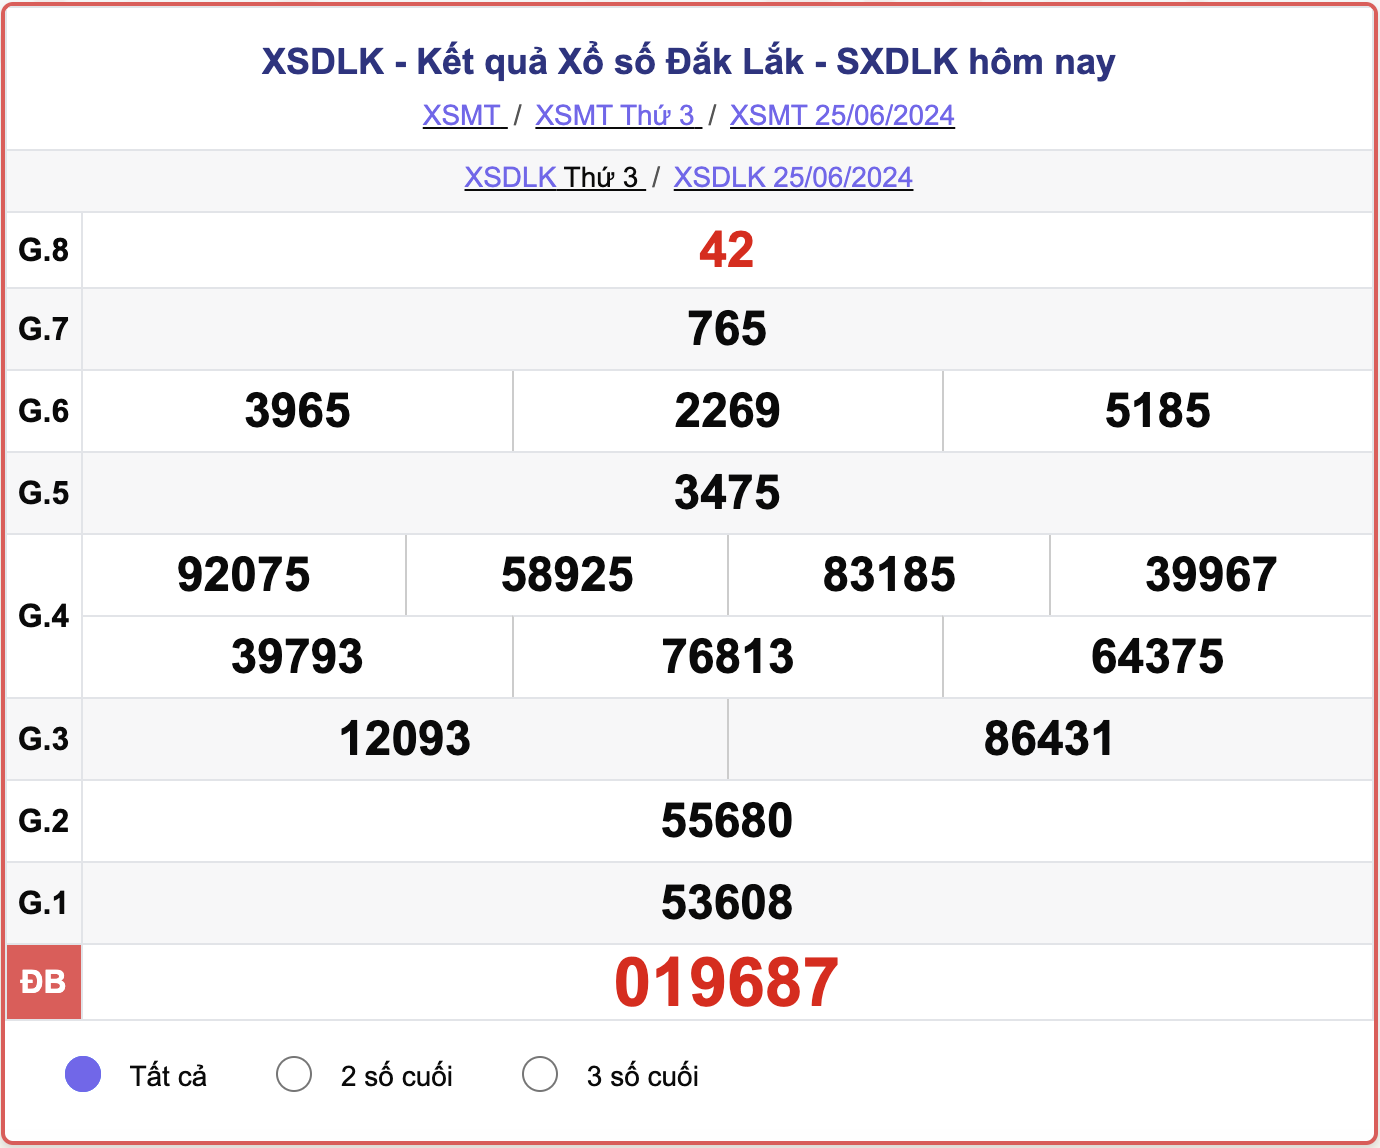 XSDLK 25/6, kết quả xổ số Đắk Lắk hôm nay 25/6/2024.